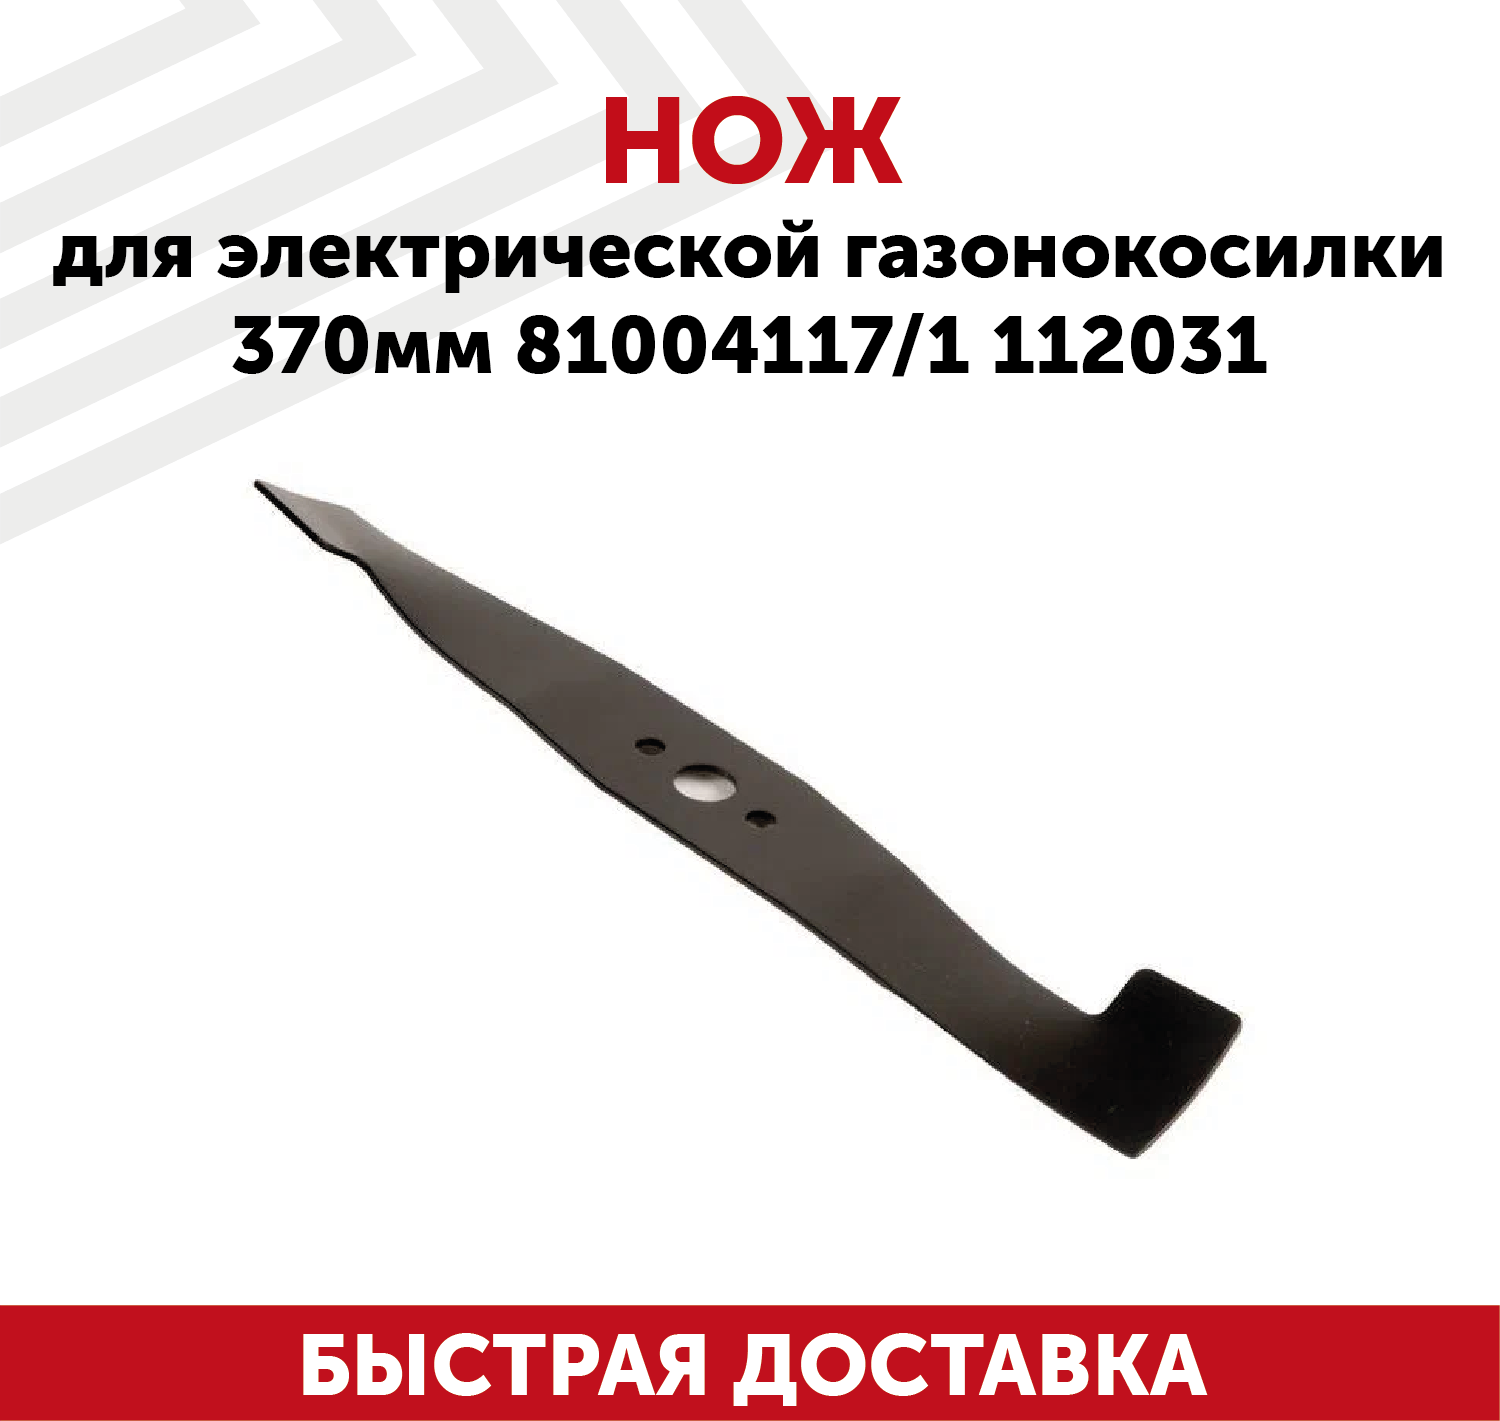 Нож для электрической газонокосилки 81004117 1112031 (37 см)